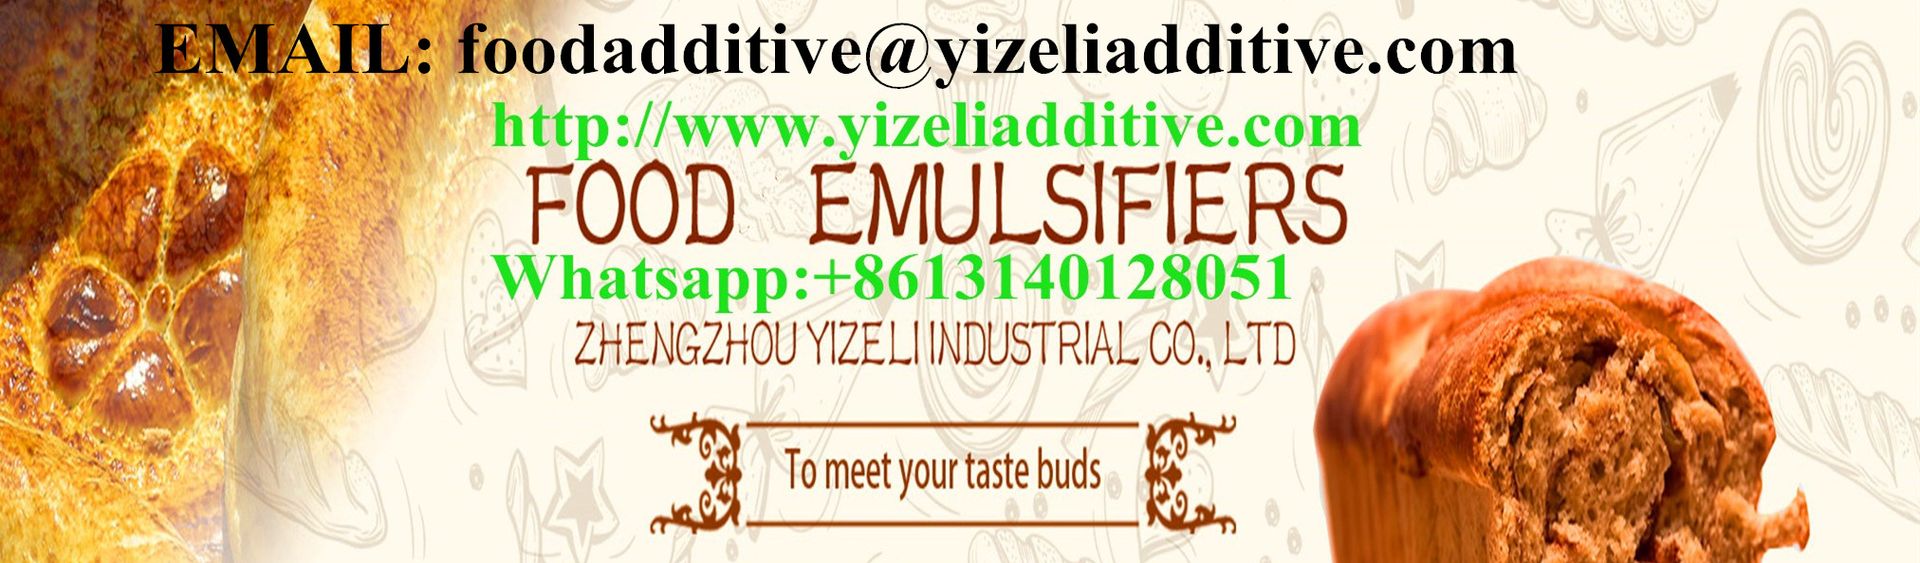 Zhengzhou Yizeli Industrial Co., Ltd Main Image